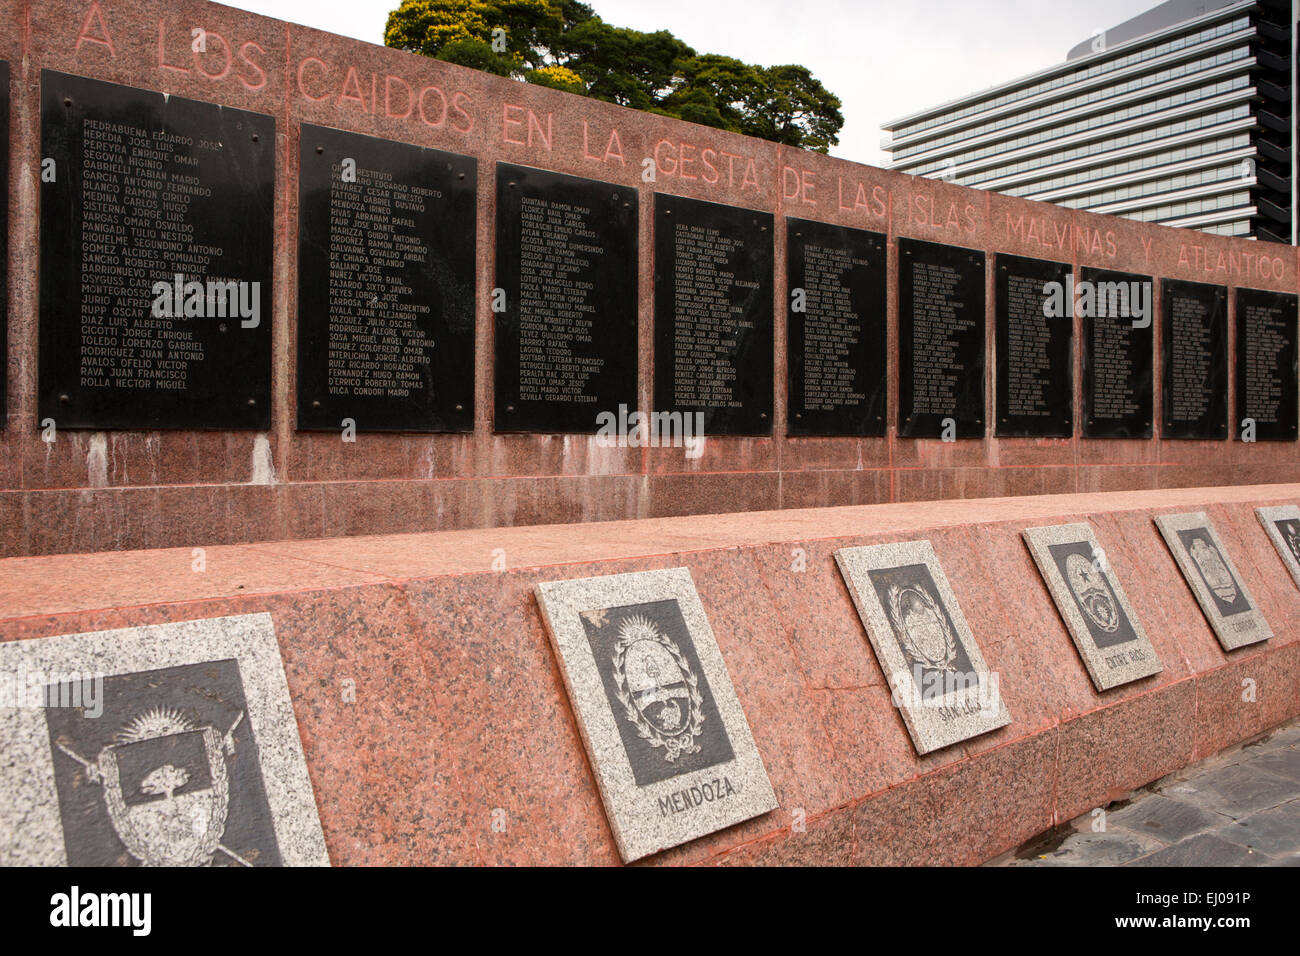 L'ARGENTINE, Buenos Aires, Retiro, la Plaza General San Martin, le Monumento Islas Malvinas, monument aux morts de la guerre des Malouines Banque D'Images